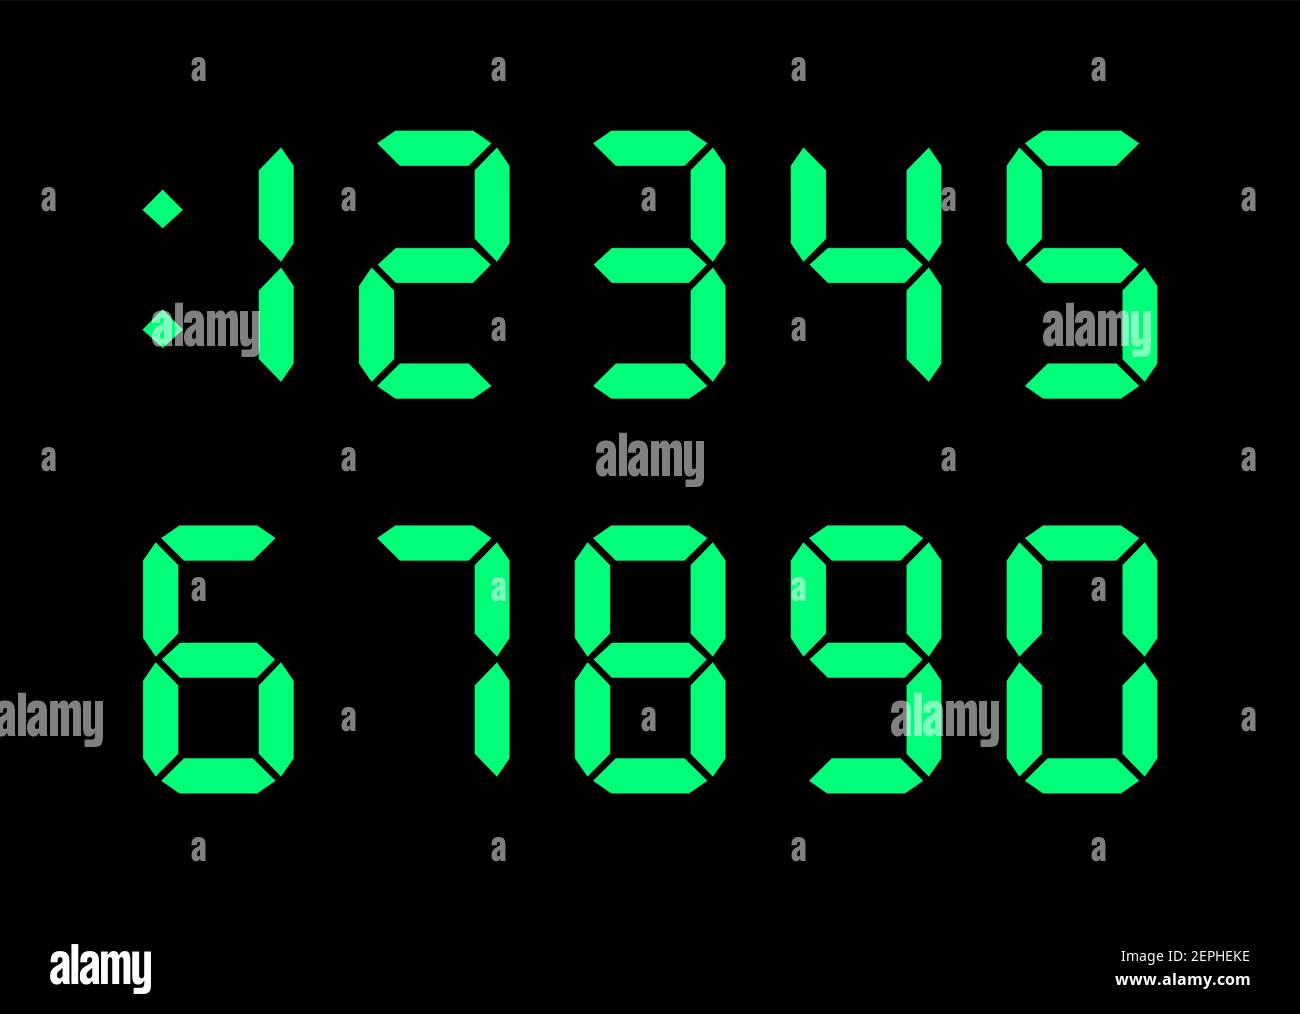 Police numérique pour affichage électronique de l'horloge, calculatrice, compteur. Couleur verte sur fond noir. Illustration vectorielle de conception plate libre de droits. Illustration de Vecteur